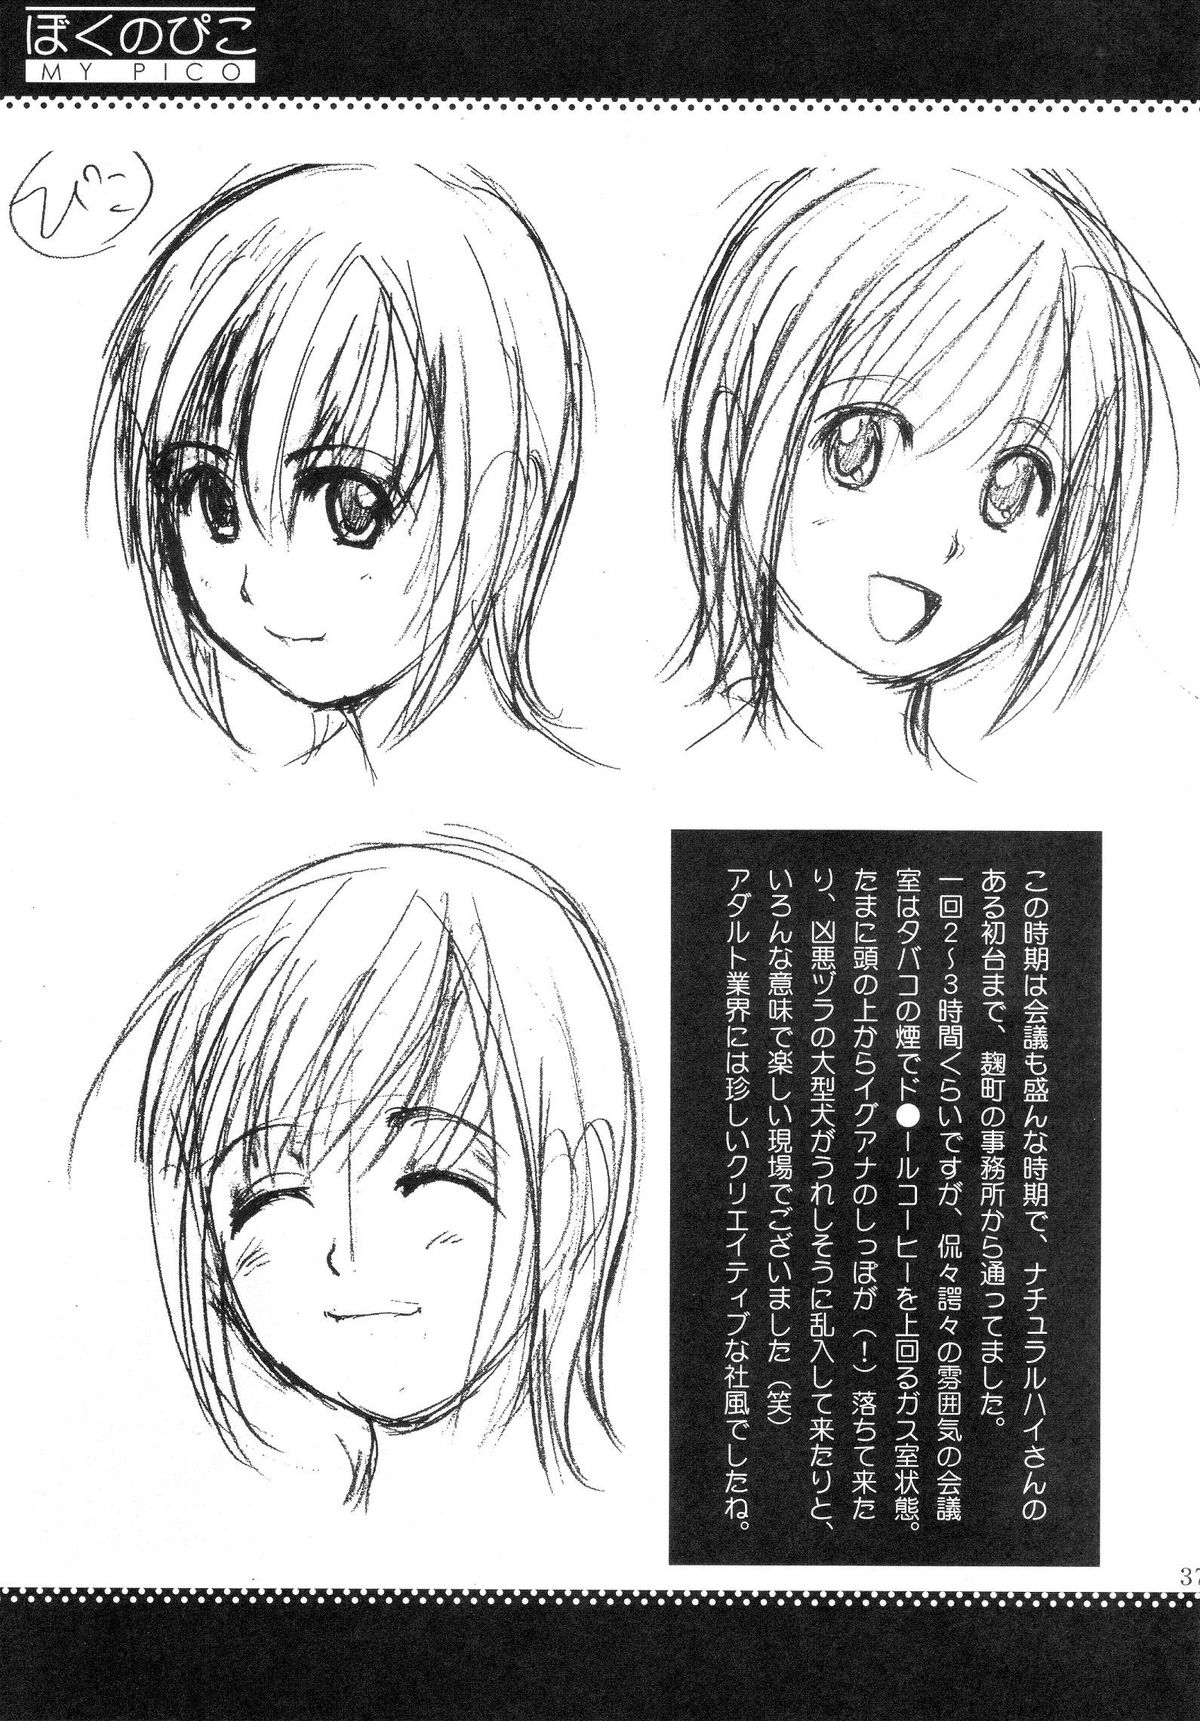 (COMIC1) [Saigado] Boku no Pico Comic + Koushiki Character Genanshuu (Boku no Pico) page 35 full